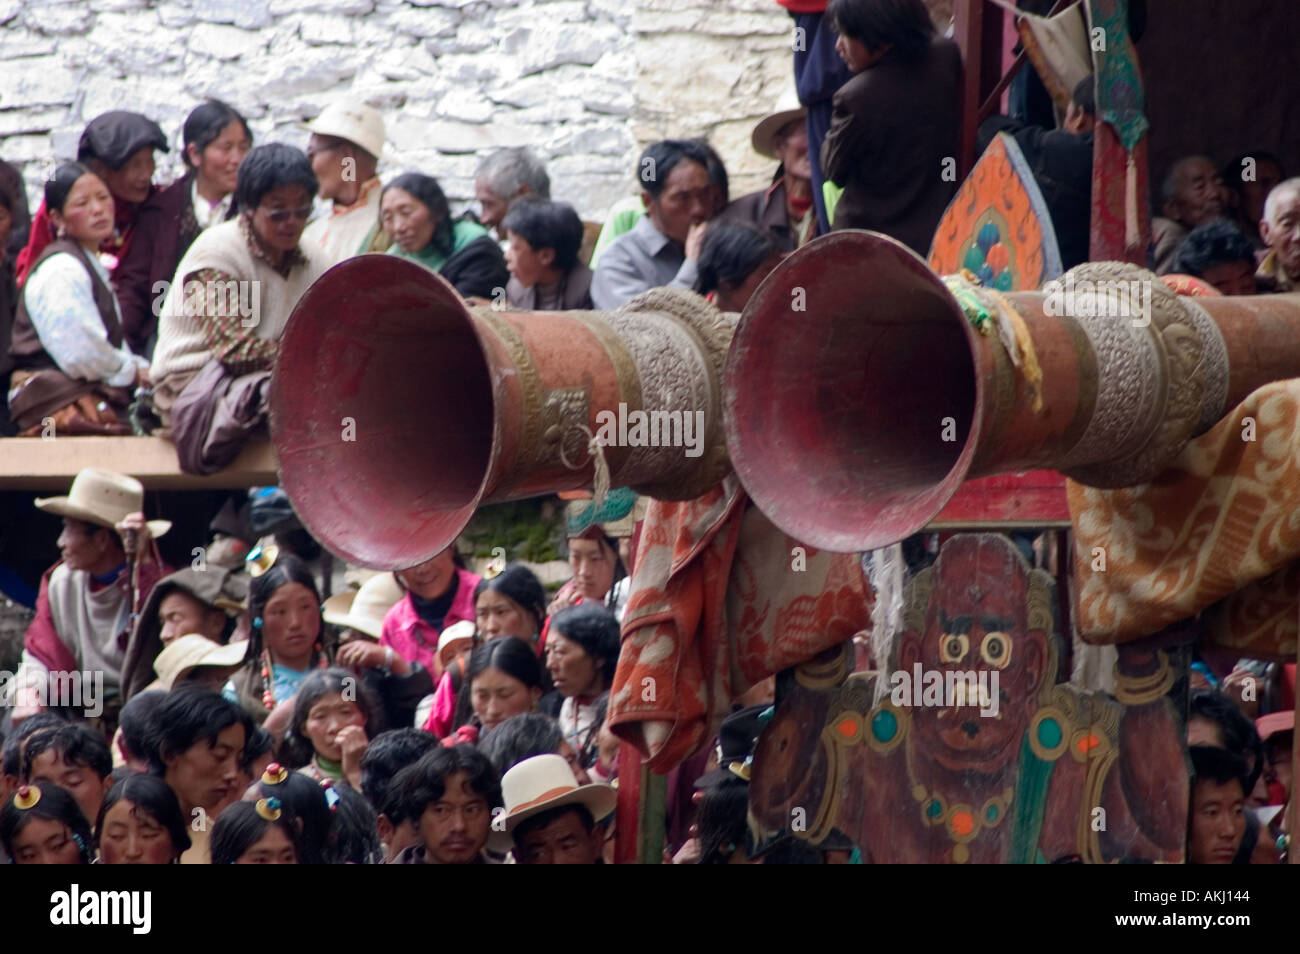 Une foule regarde le Monlam Chenmo dances ci-dessous une Tongchen corne tibétain Monastère Katok Kham Tibet Chine Sichuan Banque D'Images